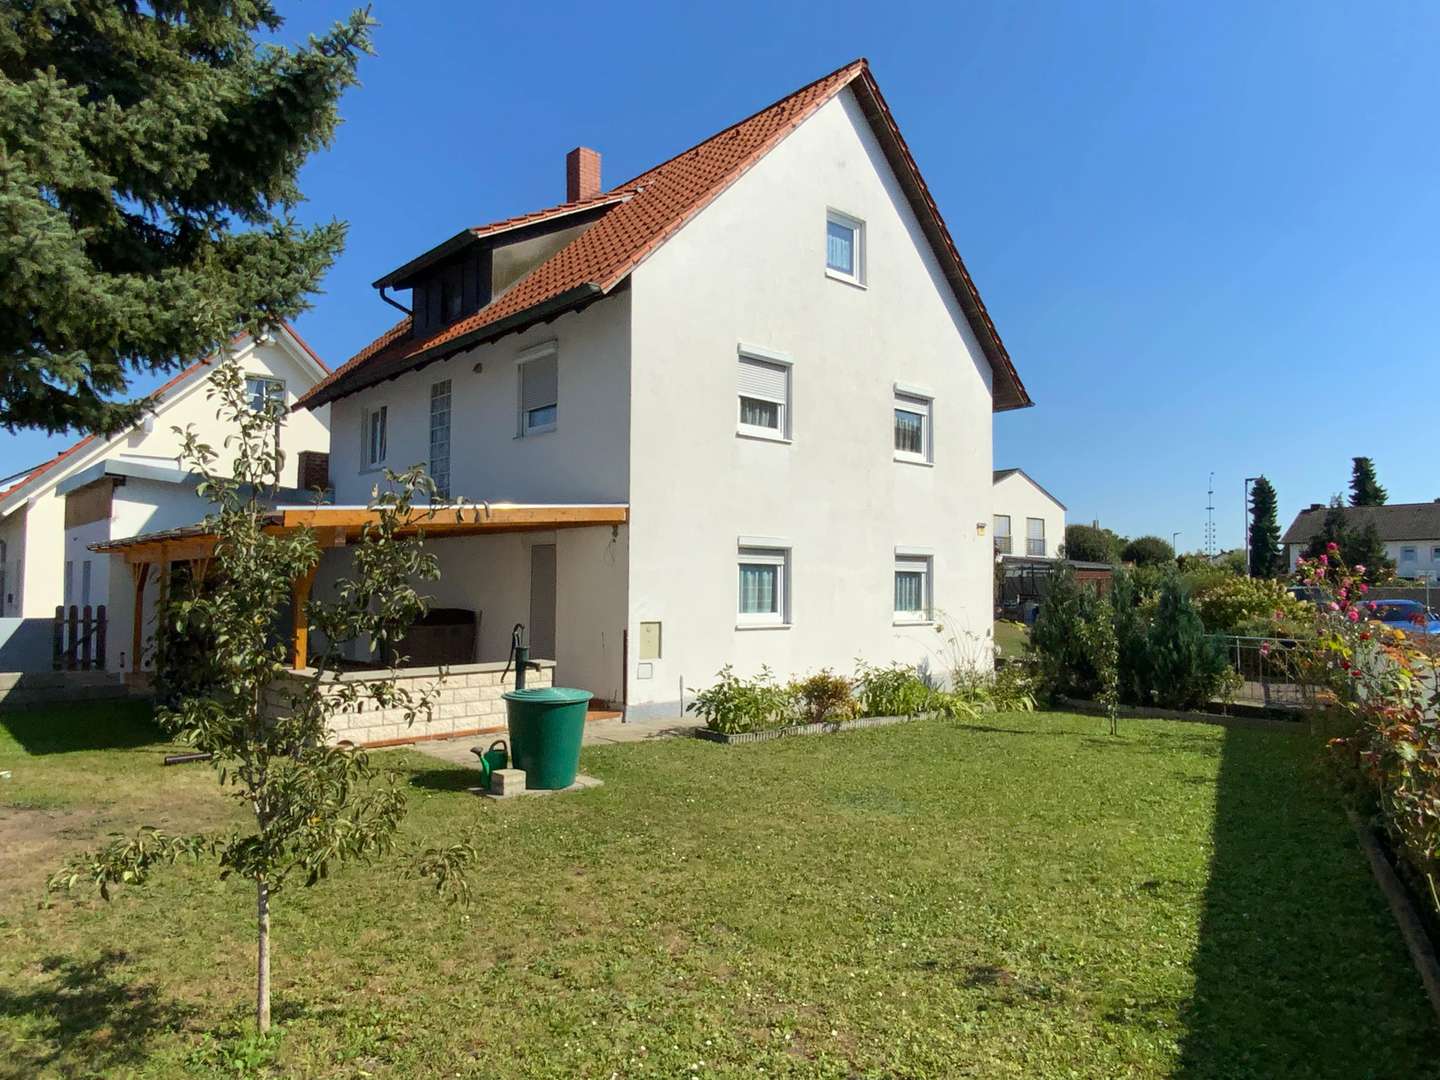 Hausansicht - Einfamilienhaus in 85051 Ingolstadt mit 150m² kaufen